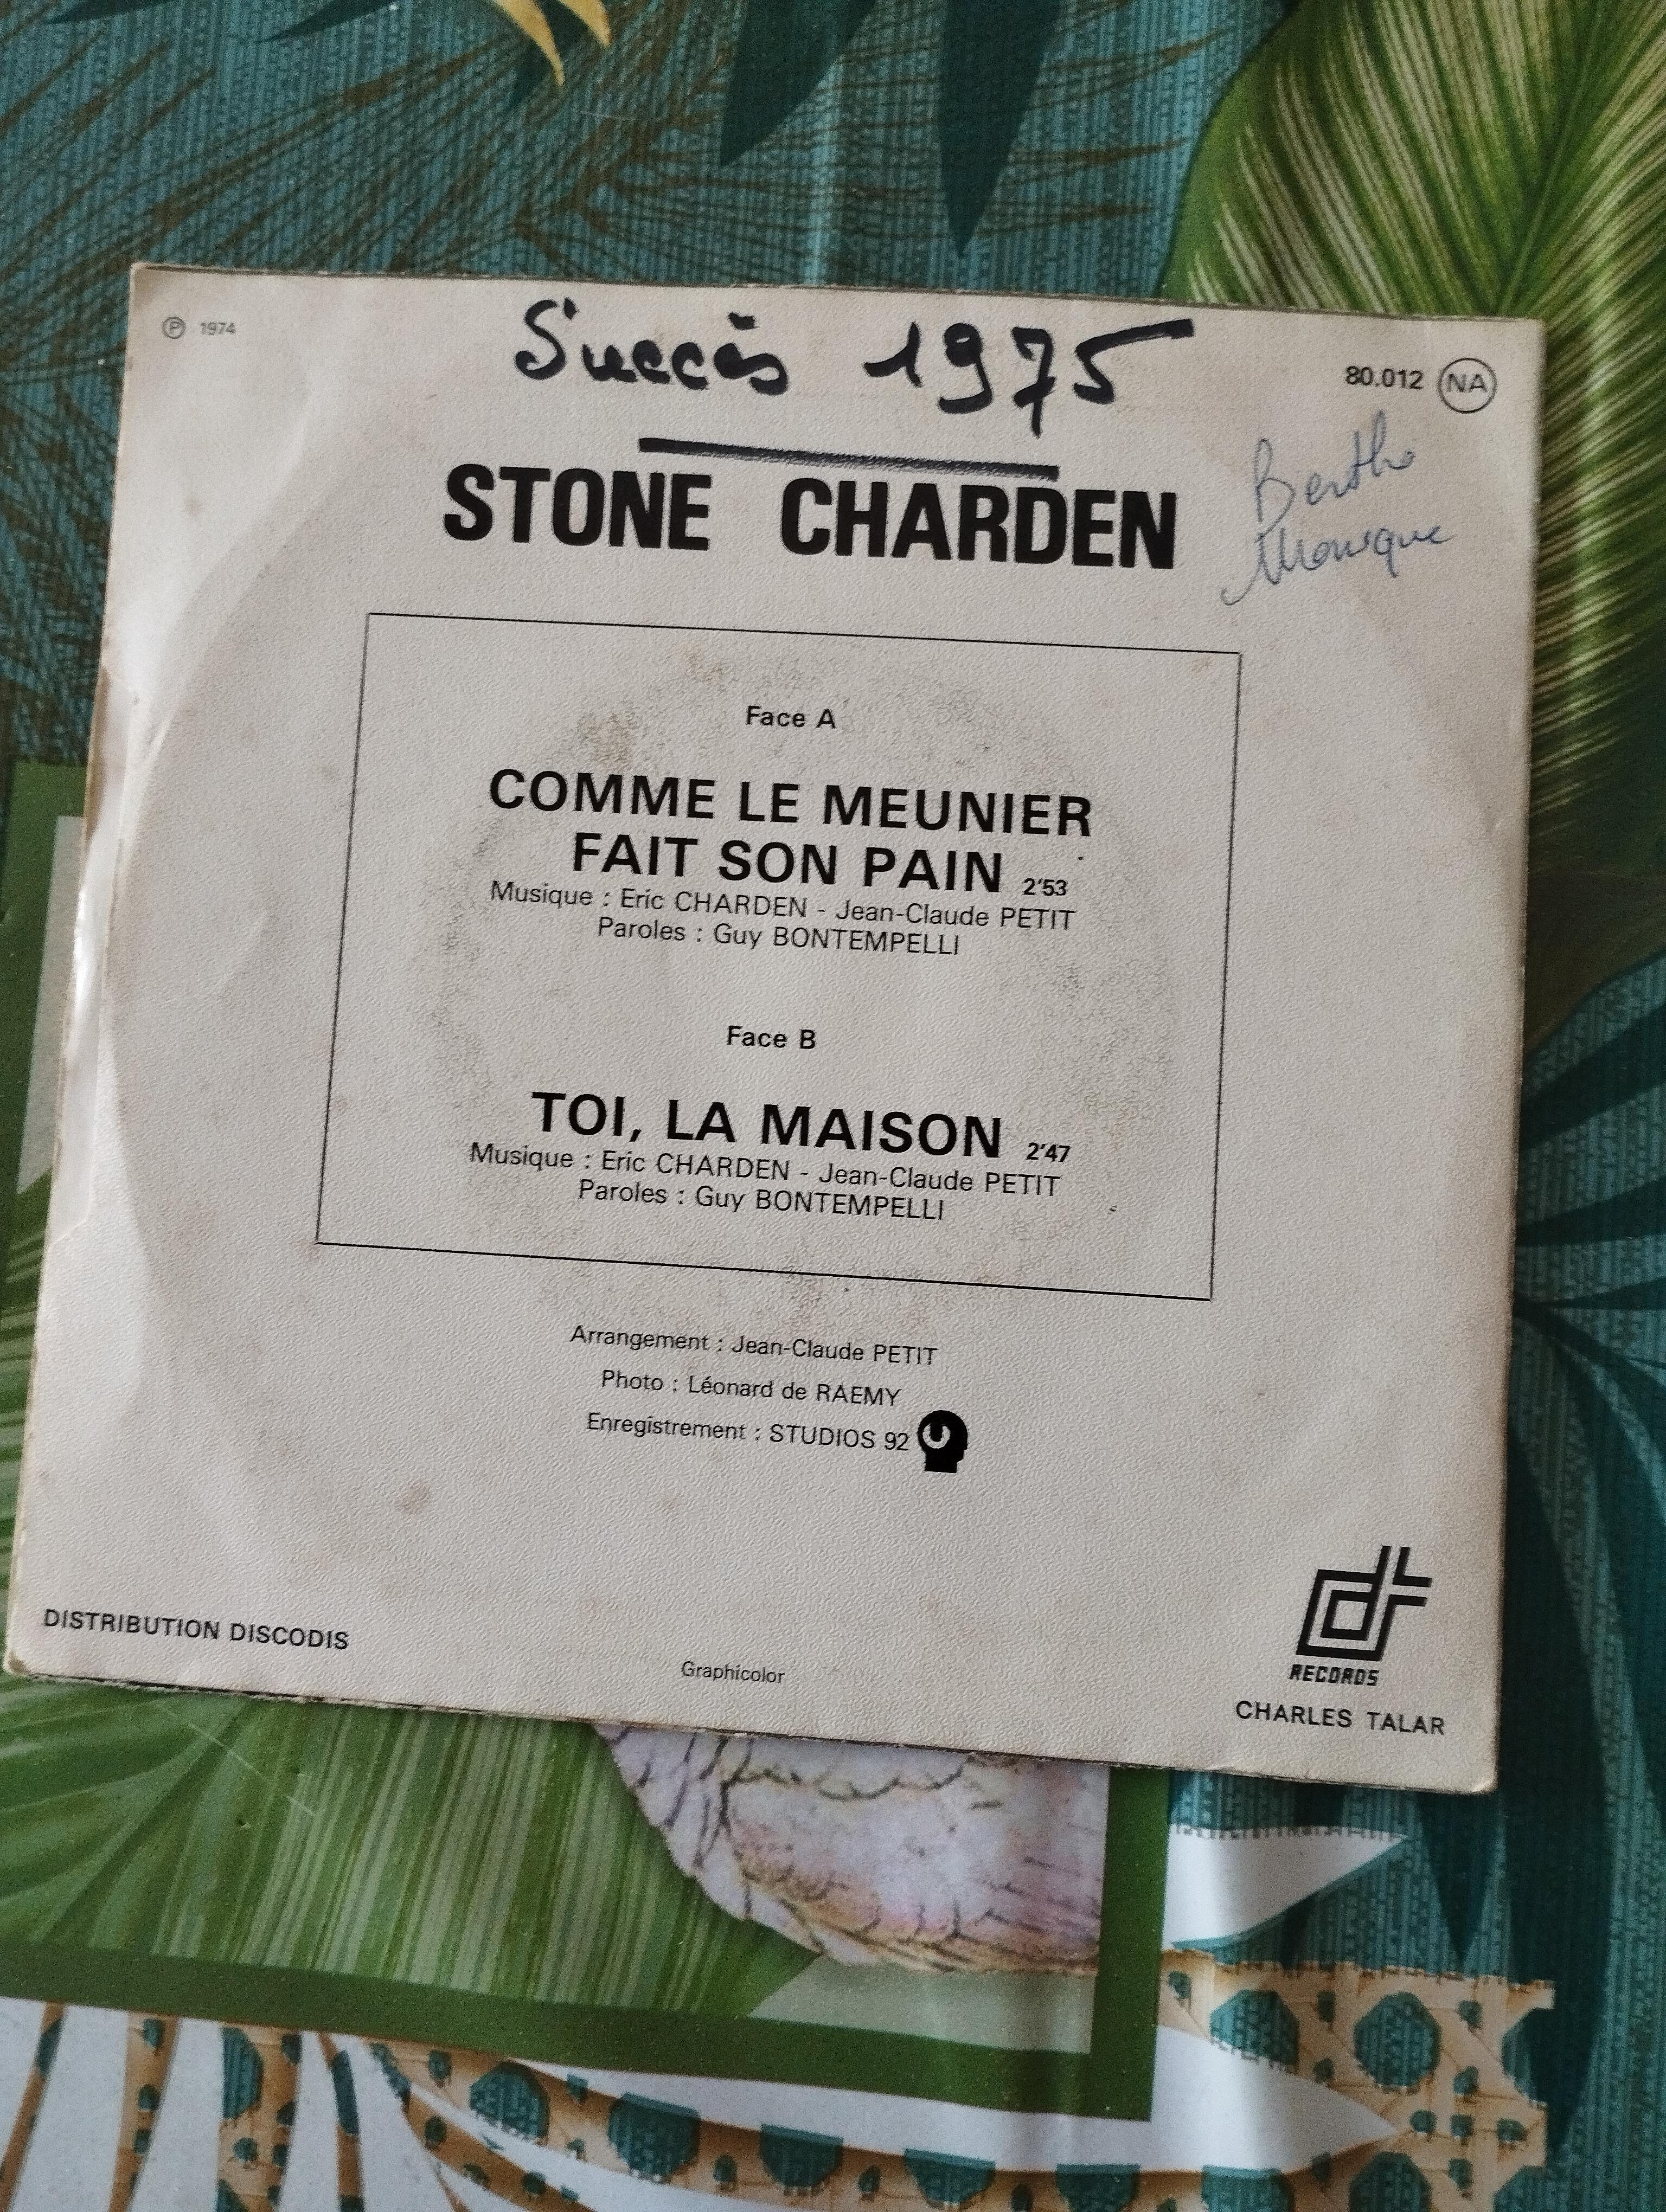 troc de troc disque vinyle 45t stone et charden image 1